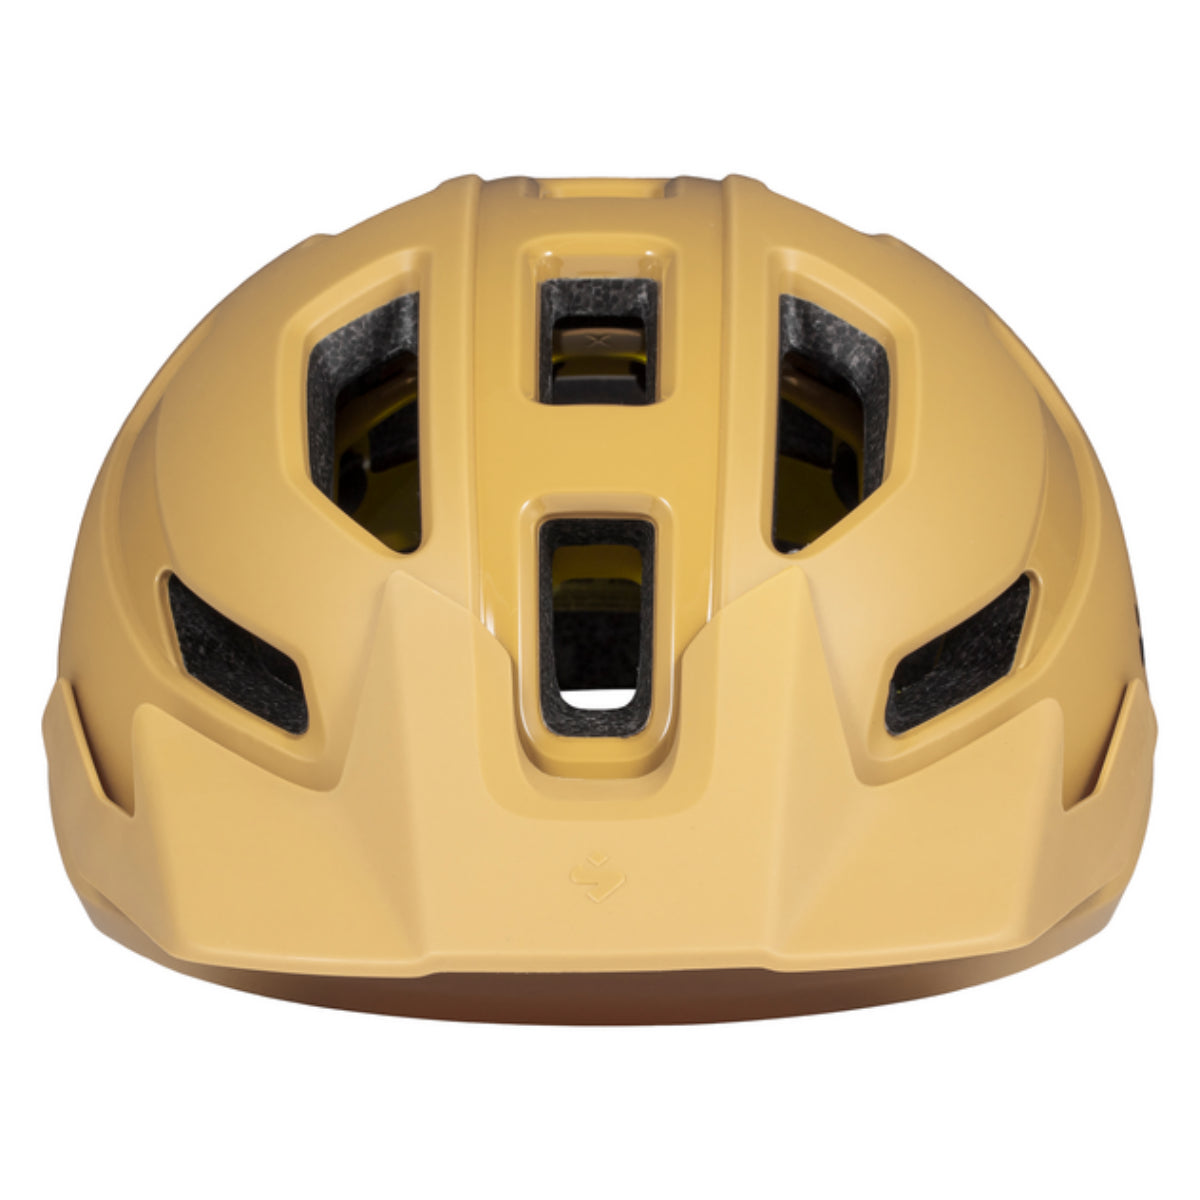 Sweet Protection - Ripper Helmet - Dusk